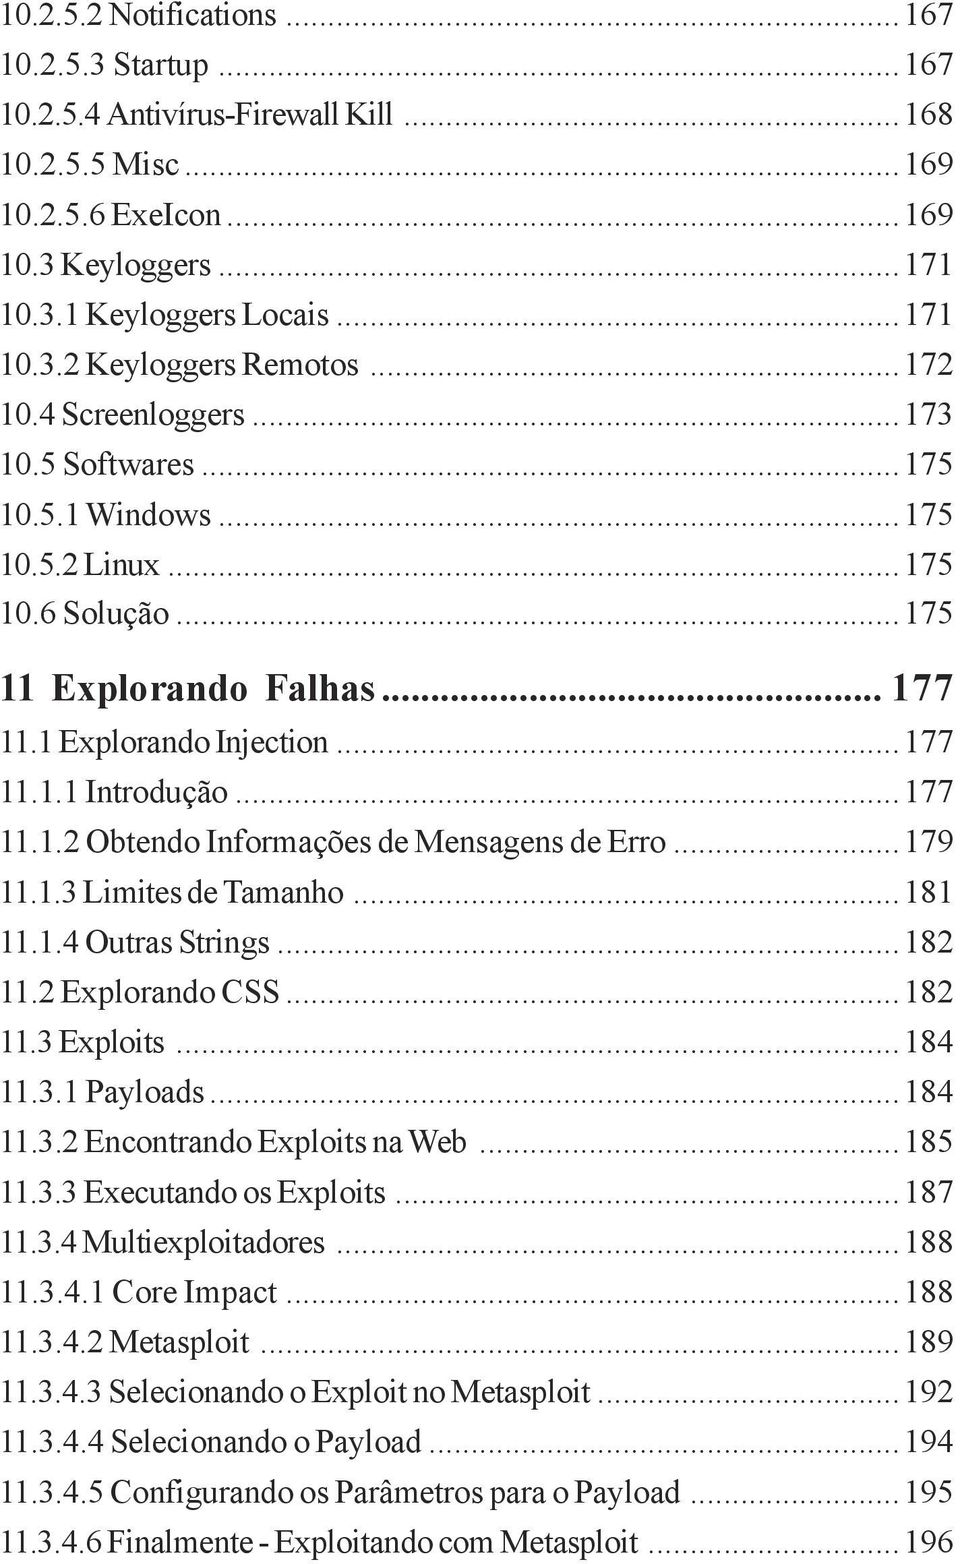 ..179 11.1.3 Limites de Tamanho...181 11.1.4 Outras Strings...182 11.2 Explorando CSS...182 11.3 Exploits...184 11.3.1 Payloads...184 11.3.2 Encontrando Exploits na Web...185 11.3.3 Executando os Exploits.